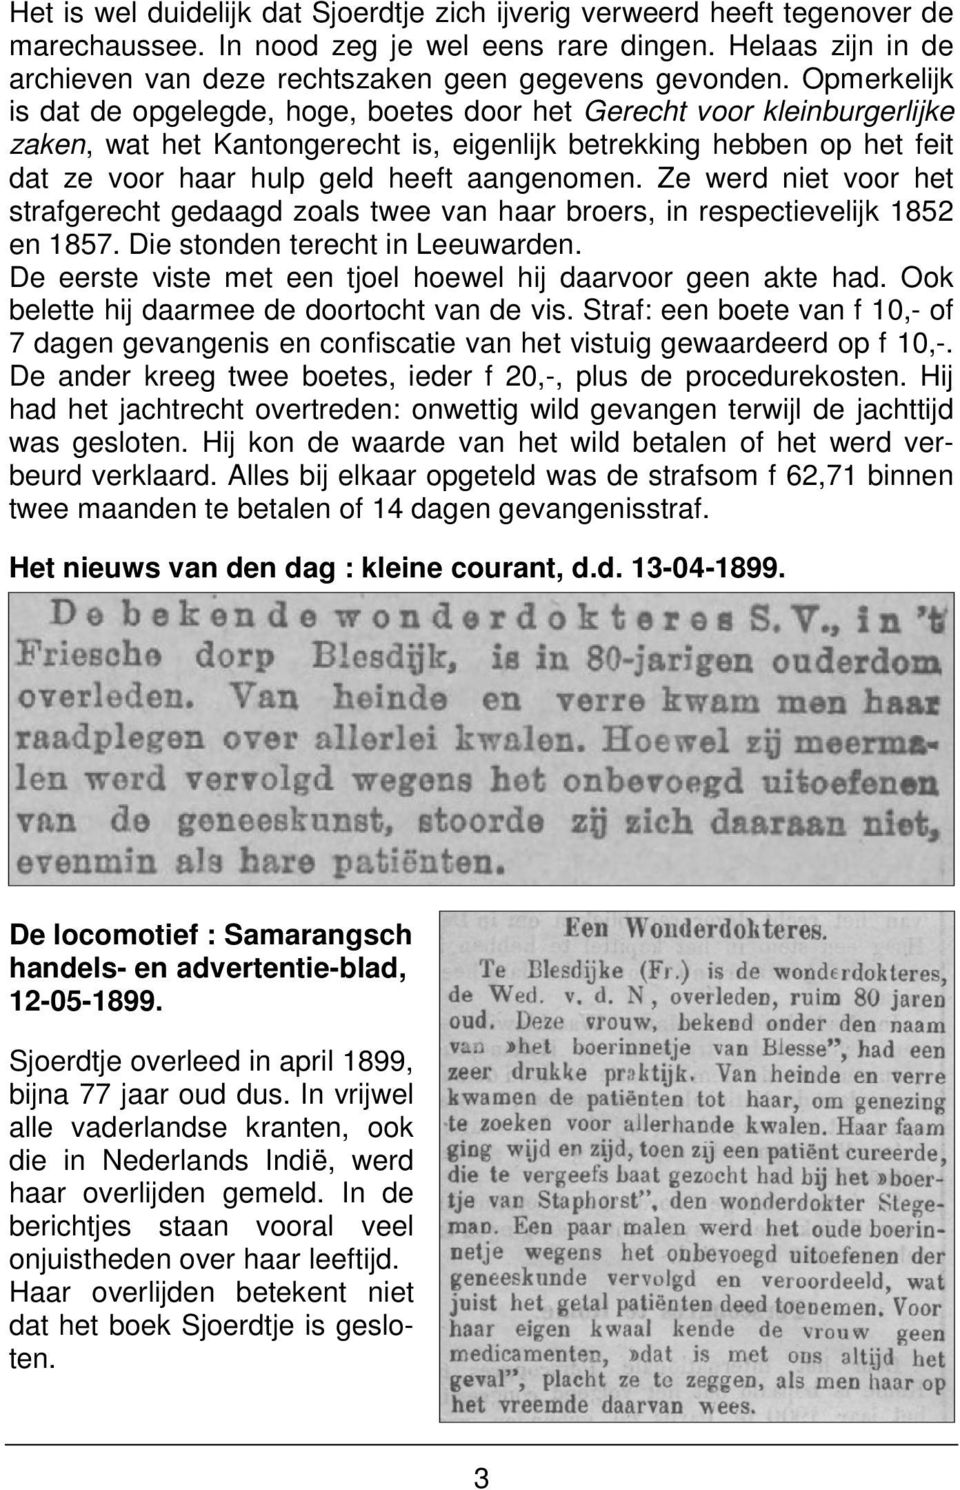 aangenomen. Ze werd niet voor het strafgerecht gedaagd zoals twee van haar broers, in respectievelijk 1852 en 1857. Die stonden terecht in Leeuwarden.